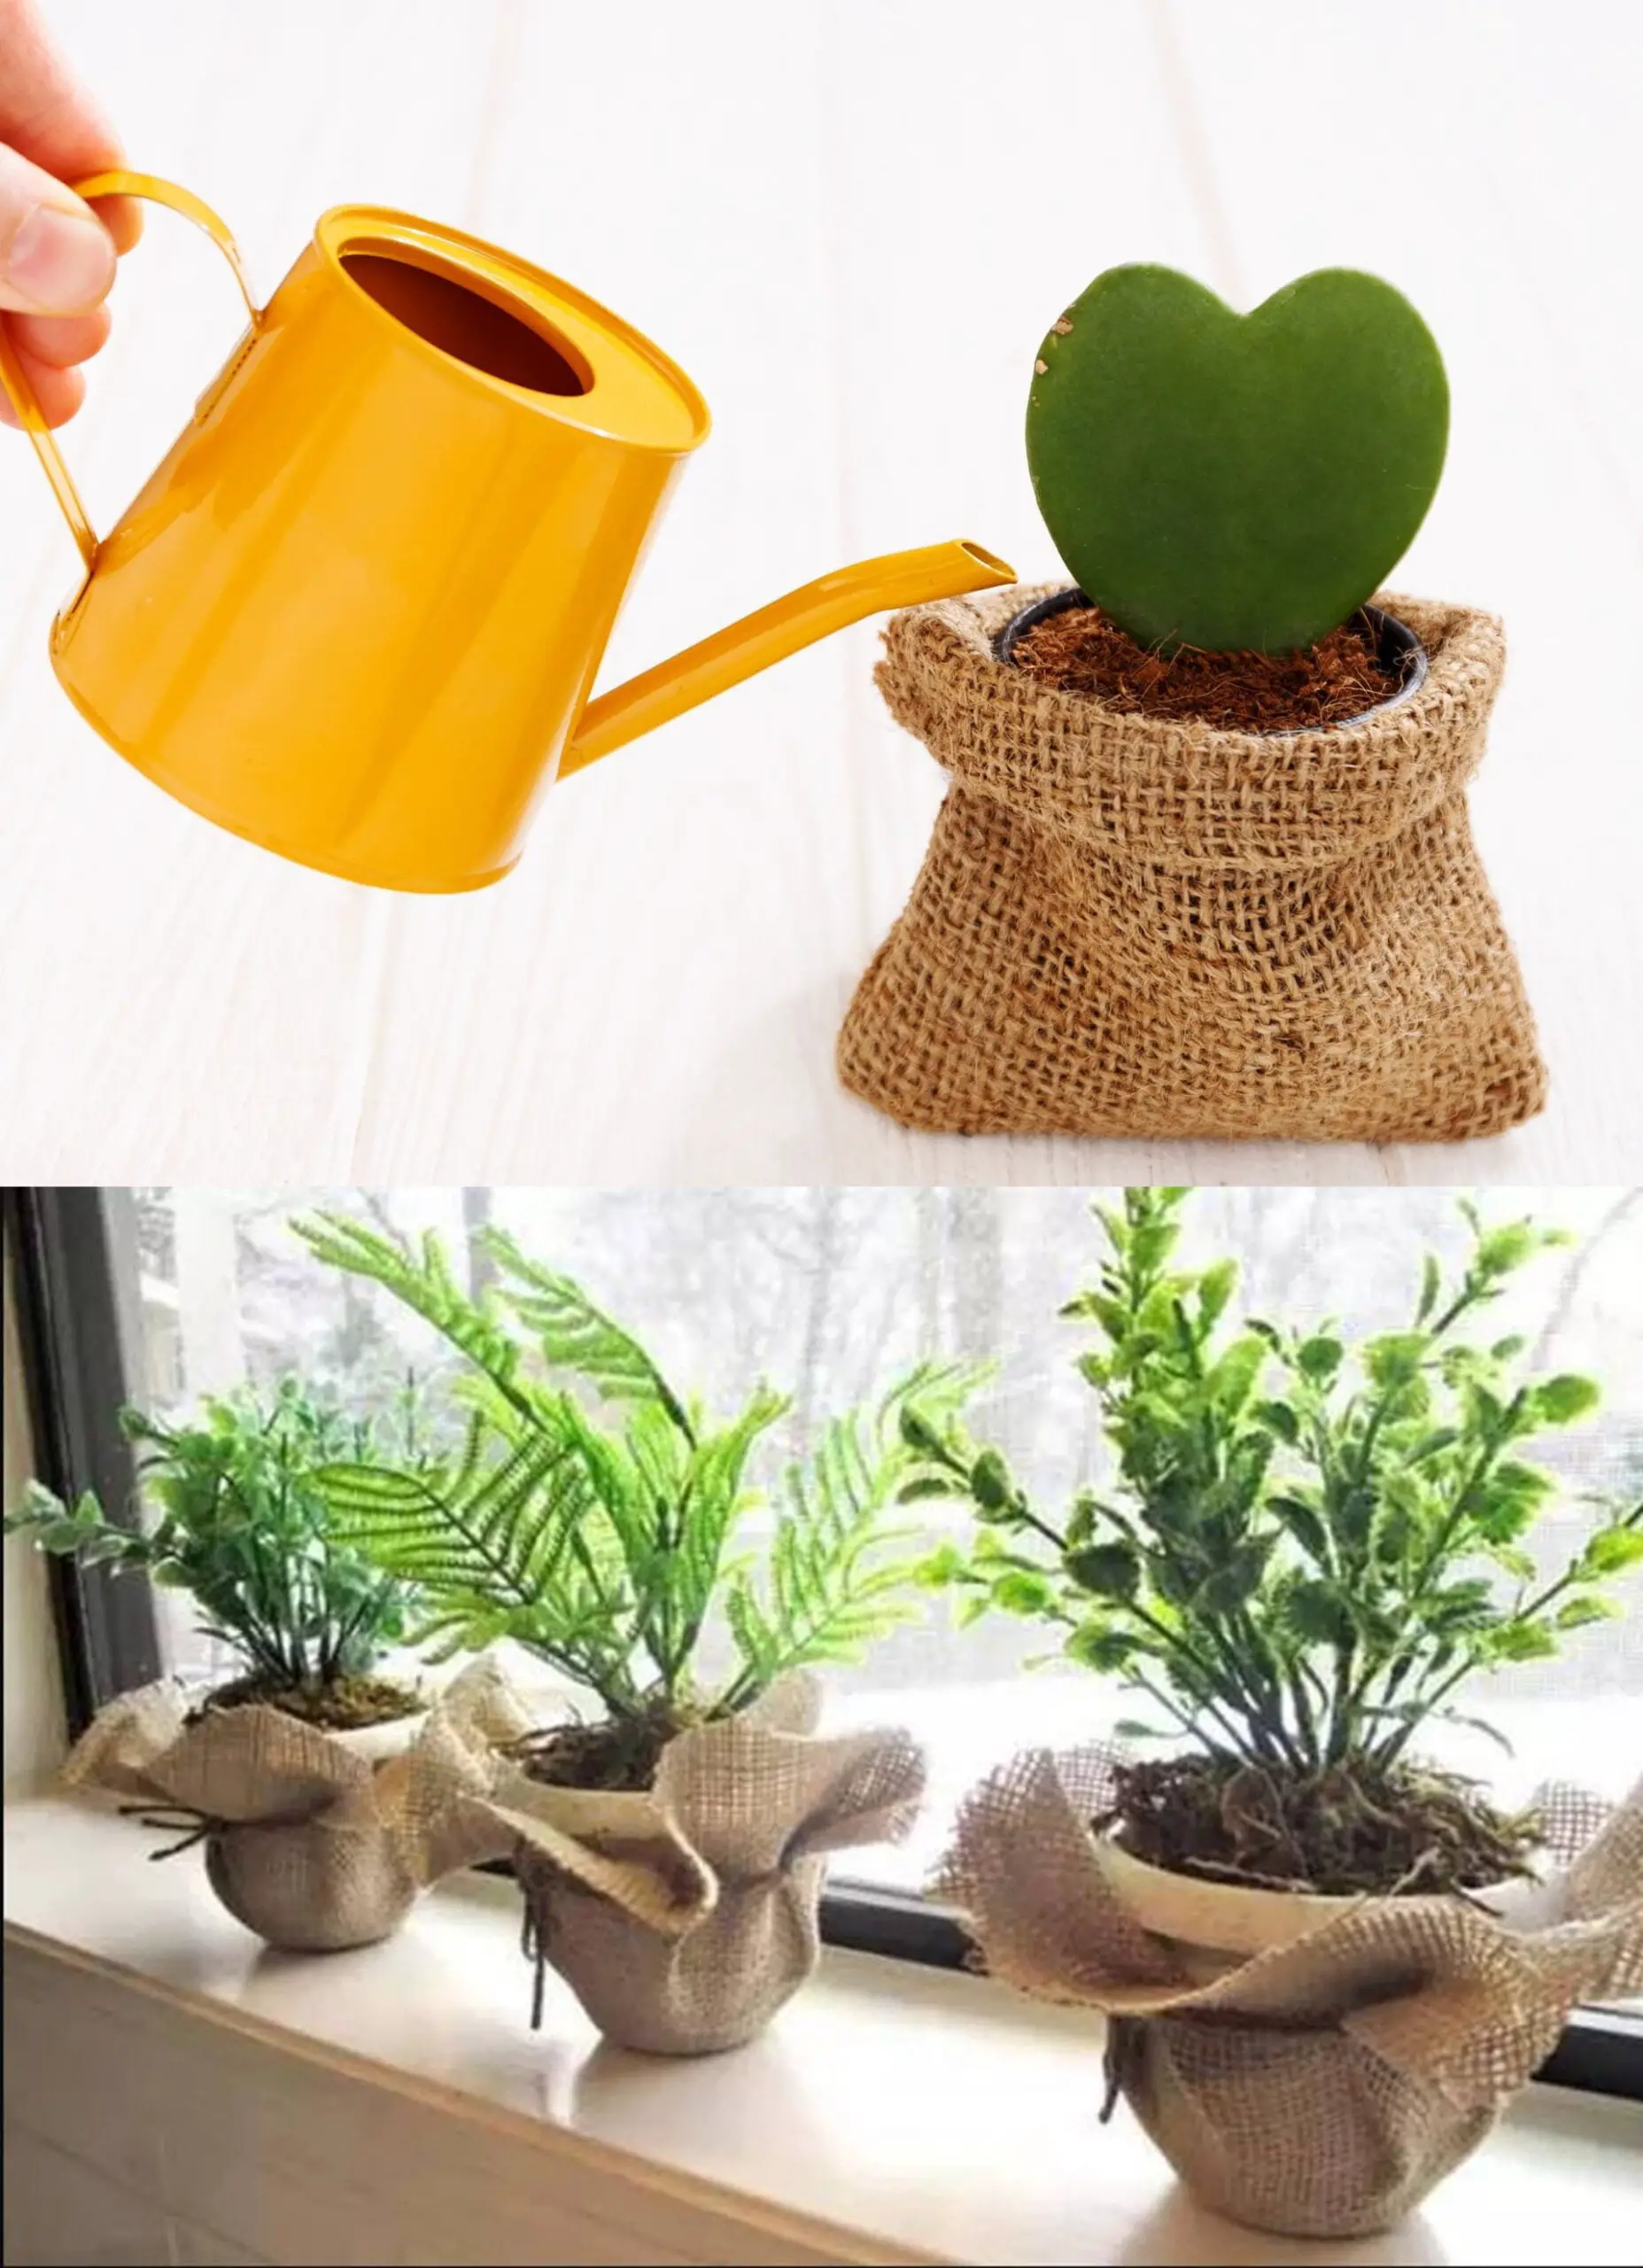 Burlap bag use as flower pots